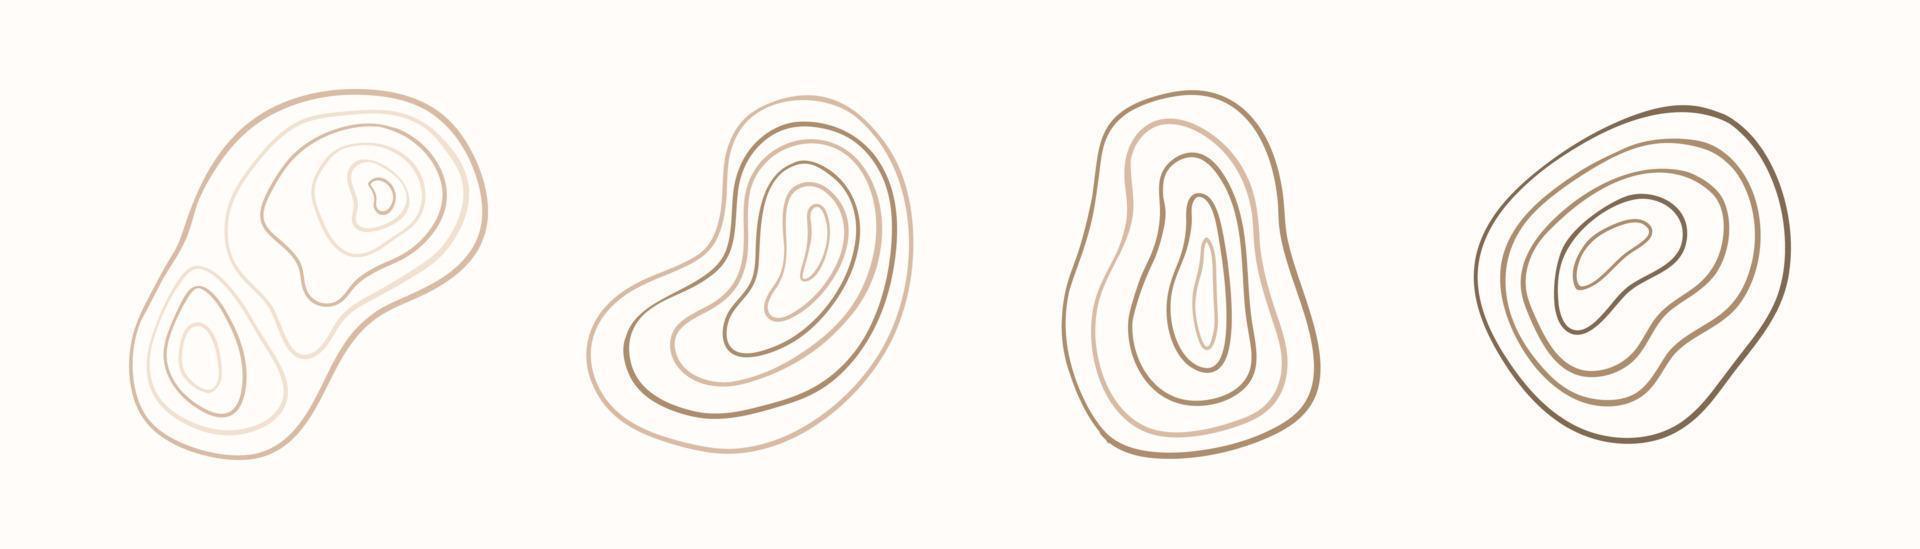 boho abstrait ligne blob formes ensemble d'art doodle simple dessinés à la main. illustrations esthétiques modernes. collection de style bohème d'éléments de design artistique contemporain. vecteur